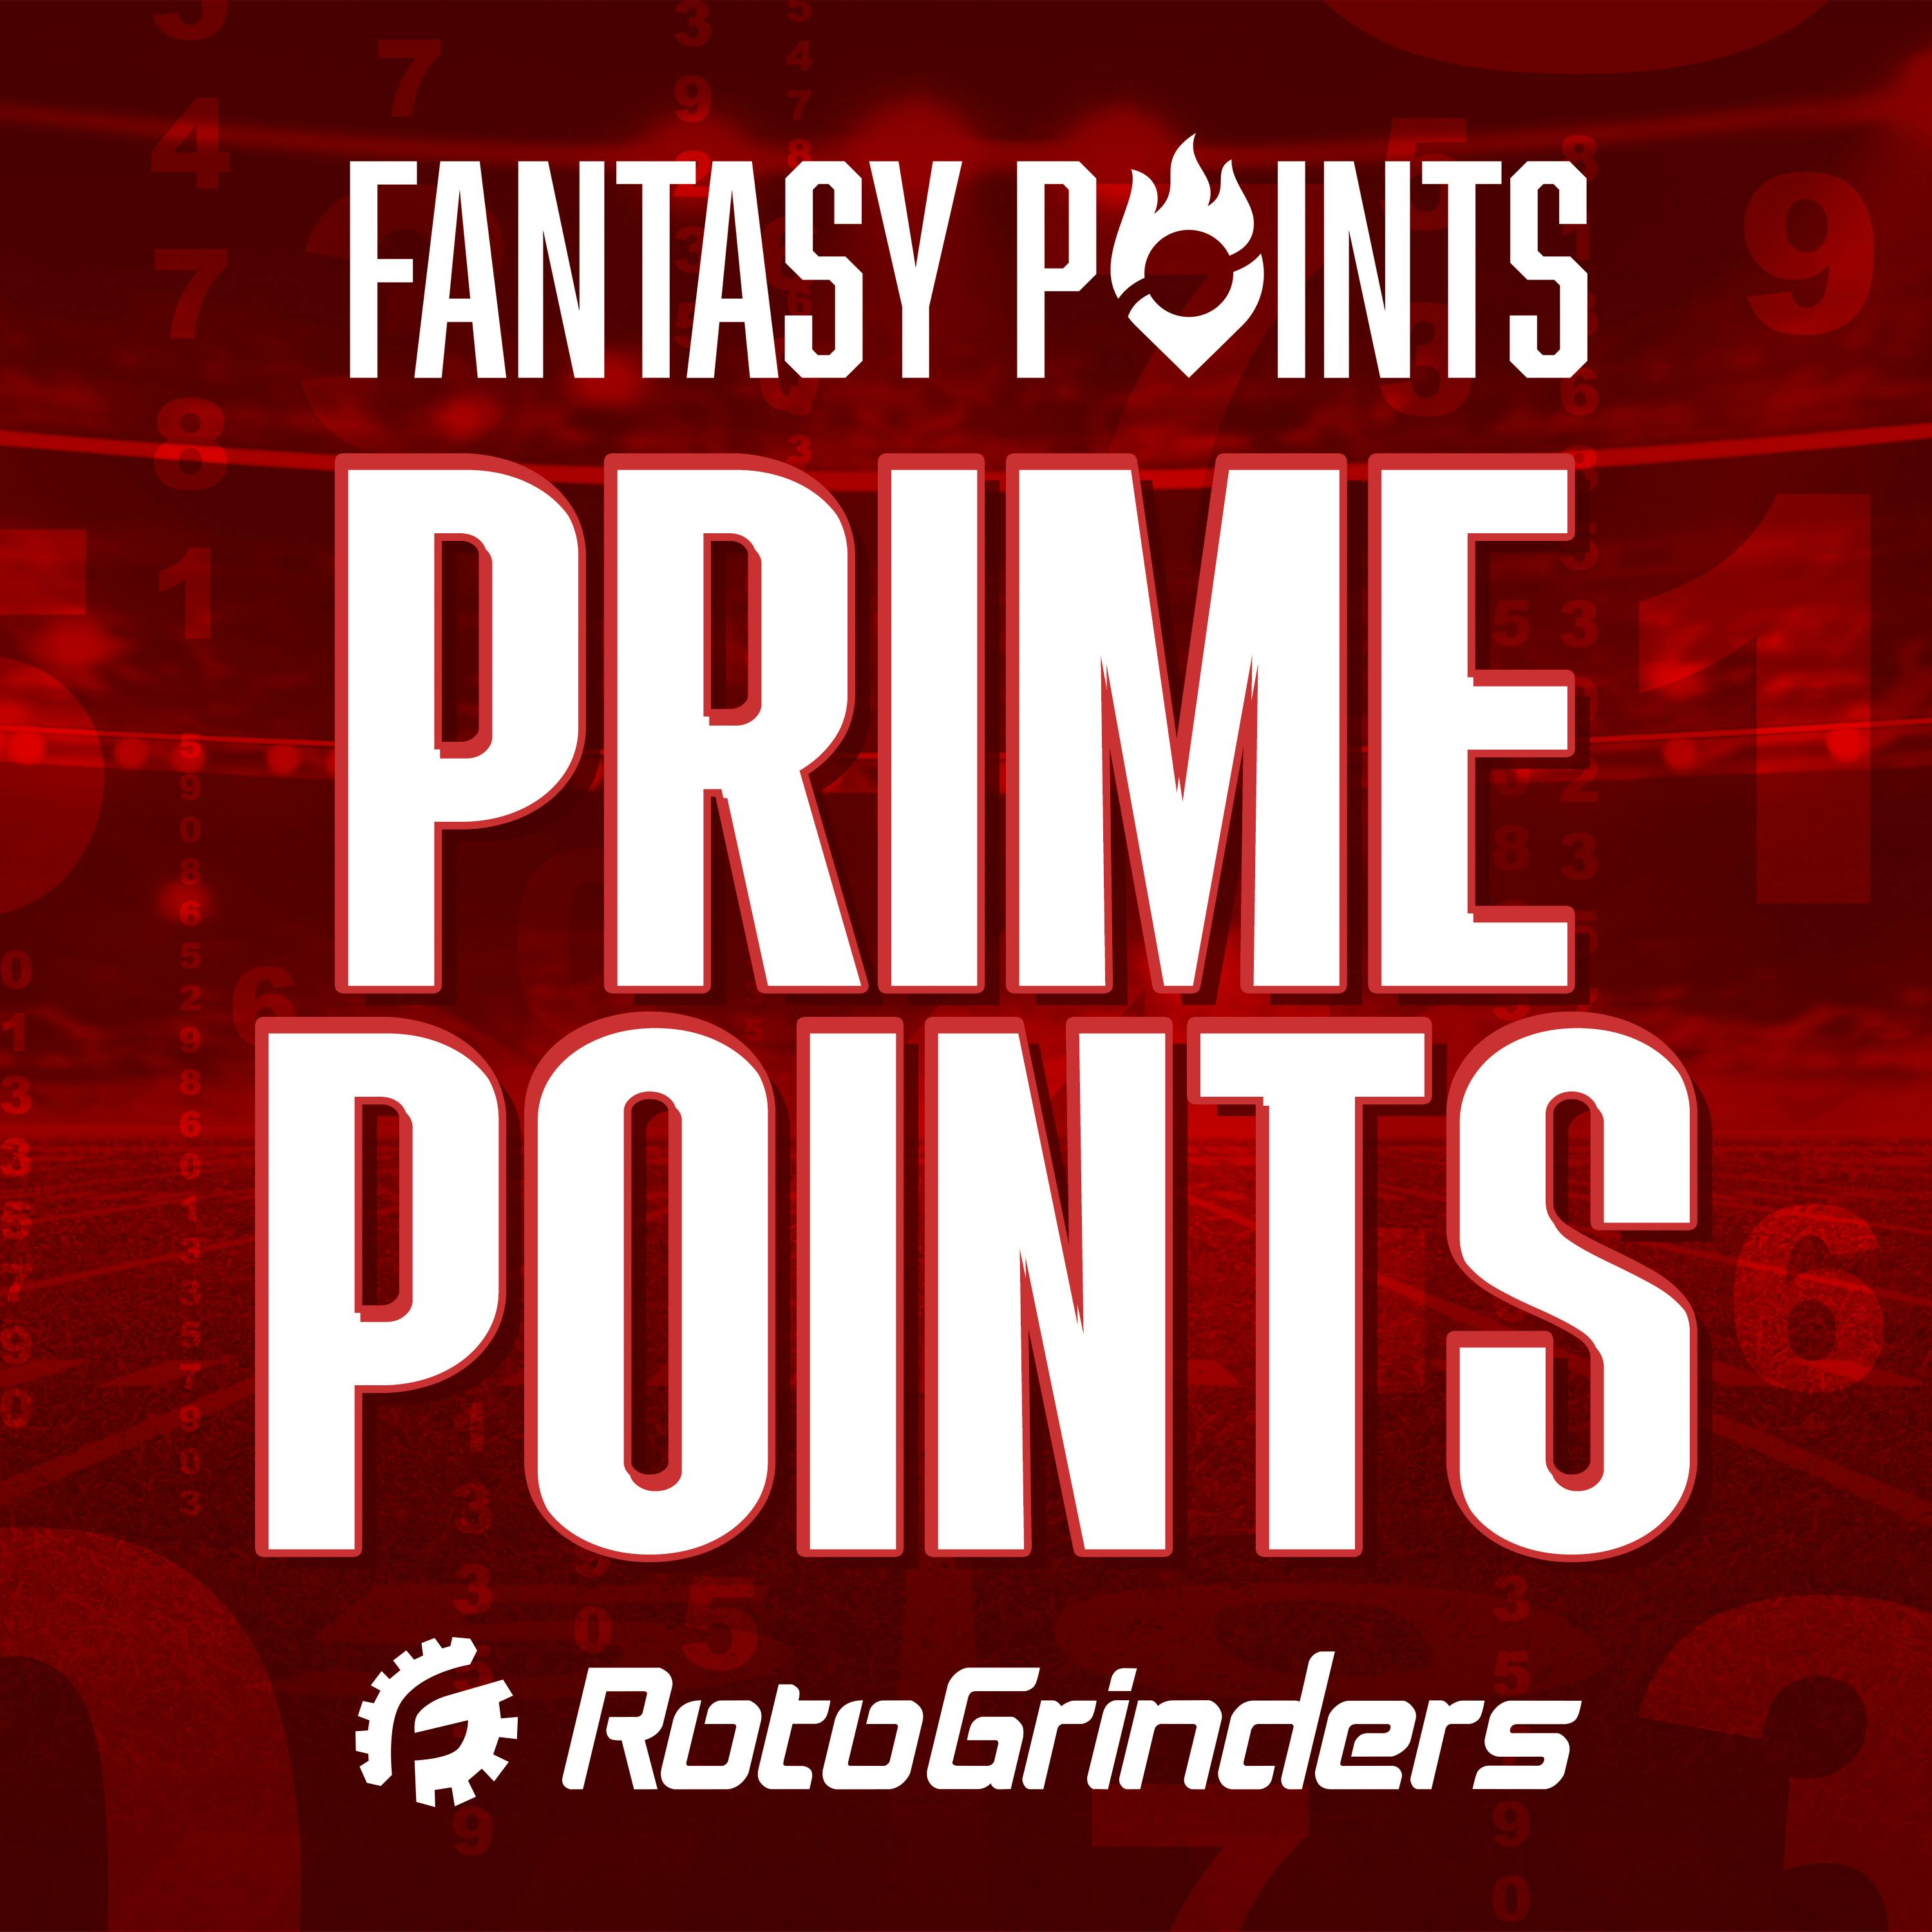 NFL Prime Points: Early Week NFL Picks & Predictions - Week 8